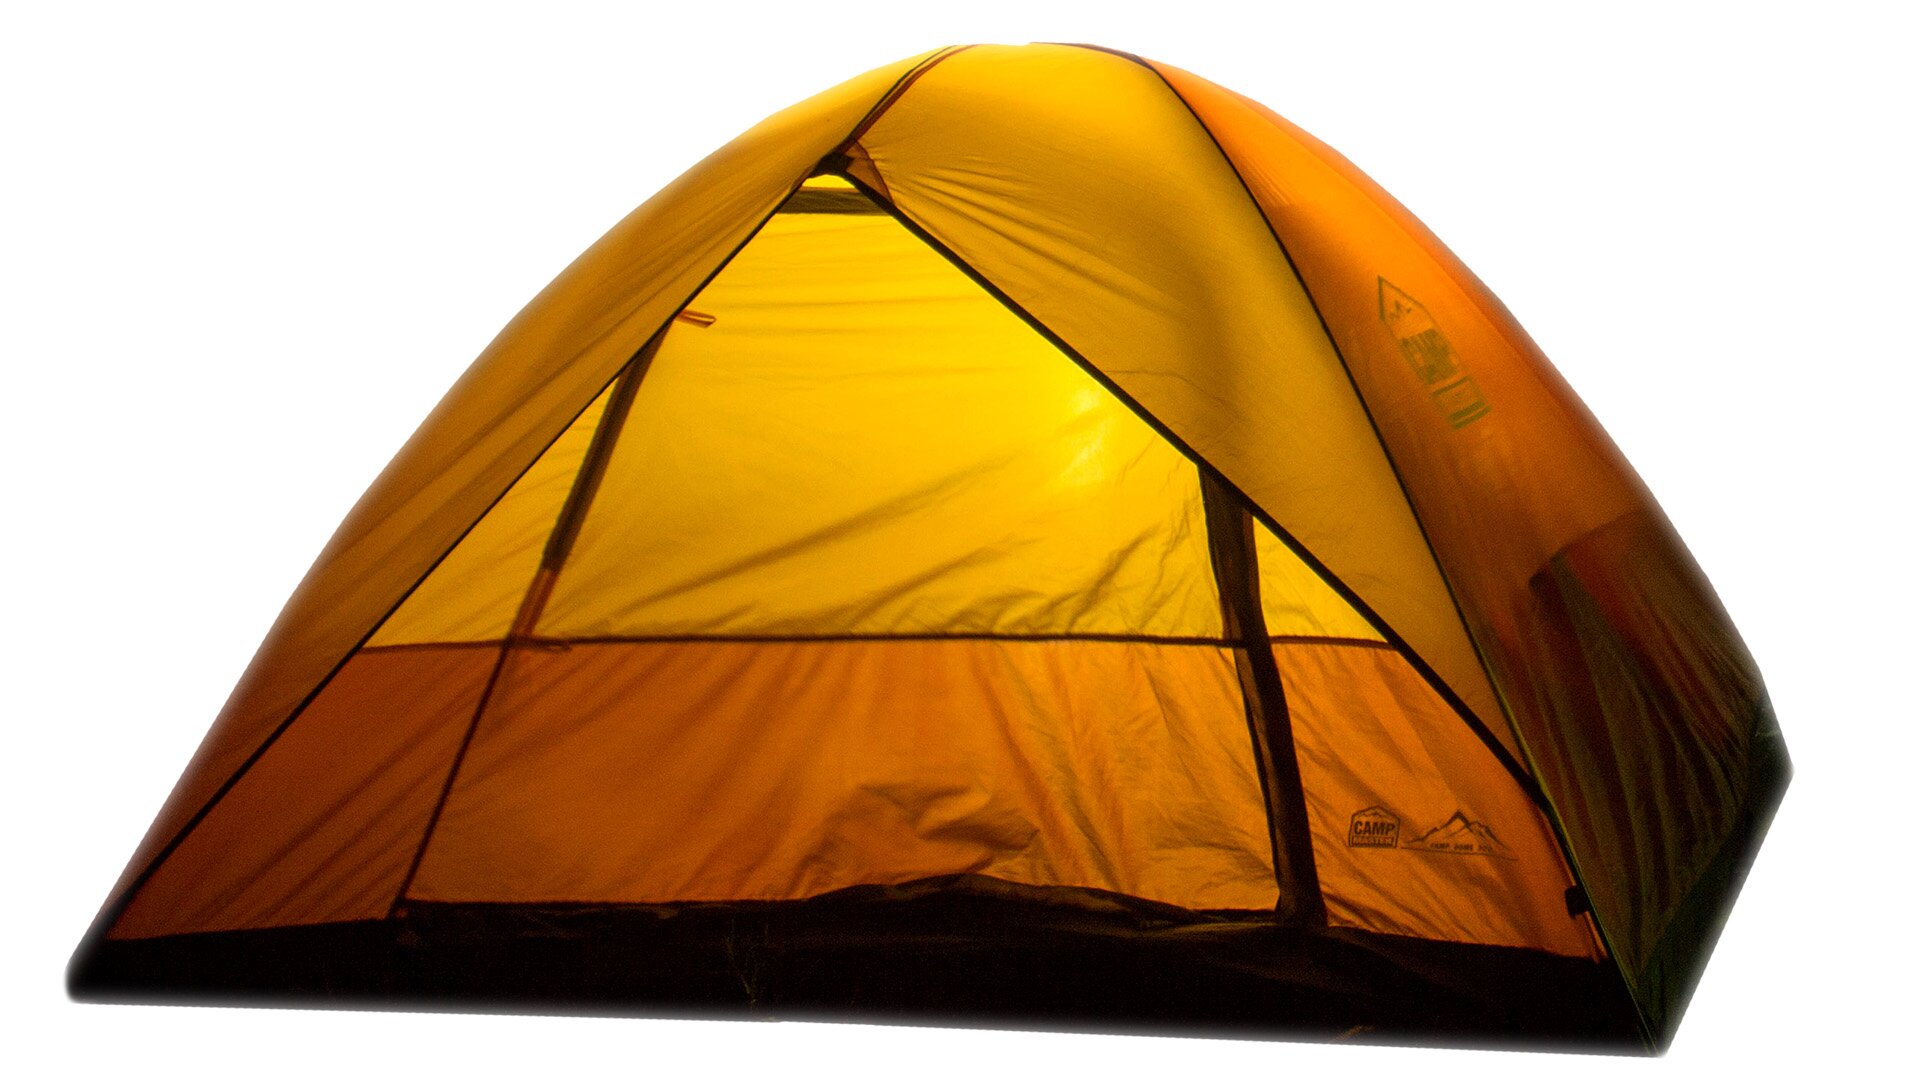 Zdjęcie przedstawia przykładowy rozłożony namiot.